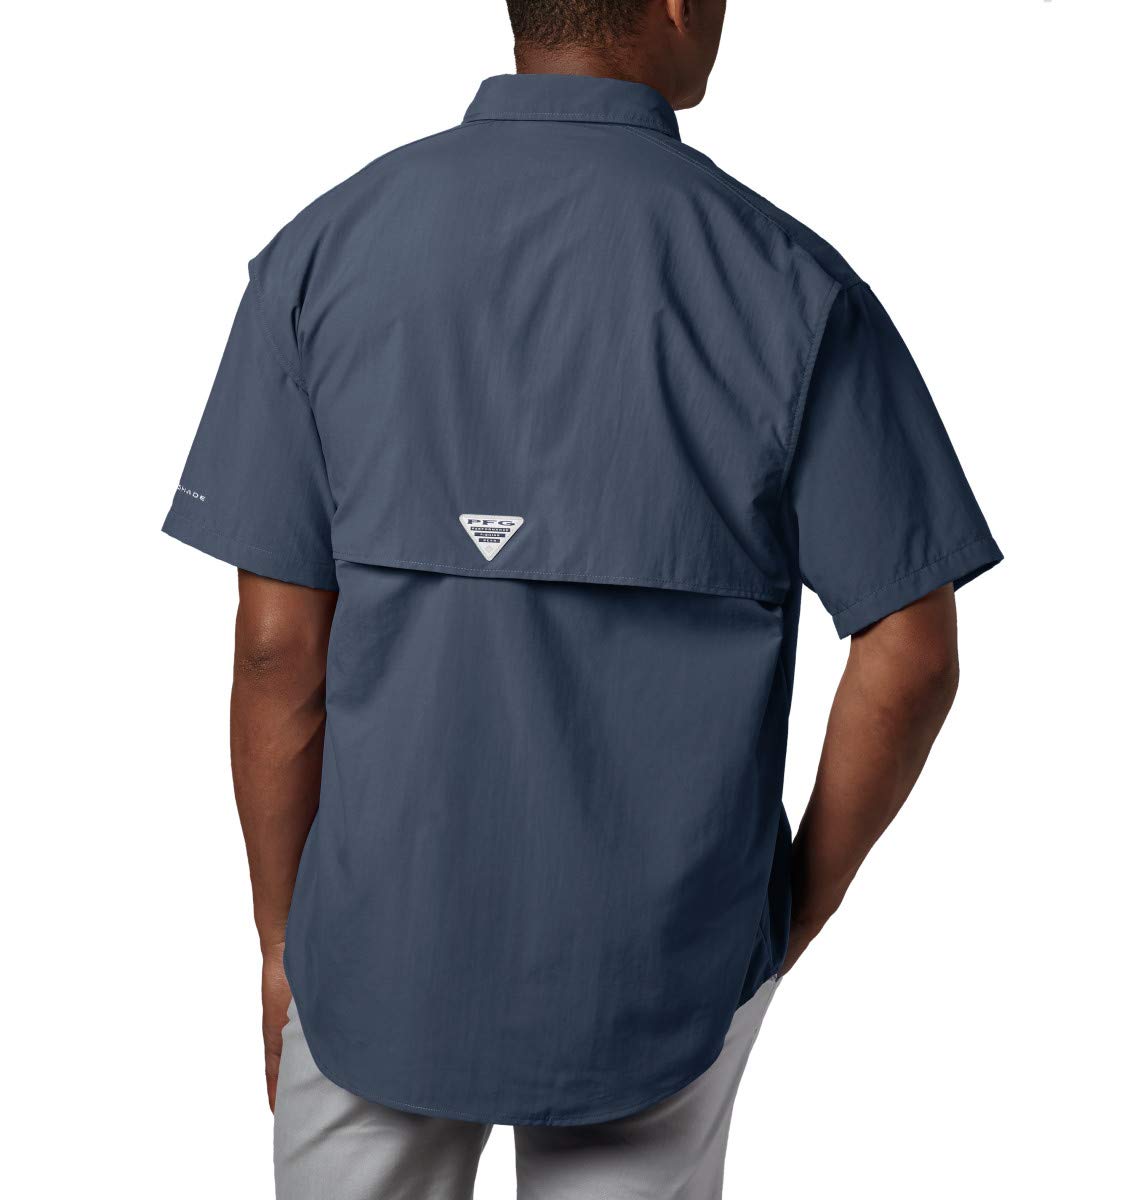 Columbia Men's Bahama II UPF 30 Short Sleeve PFG Fishing Shirt, Collegiate Navy, Small